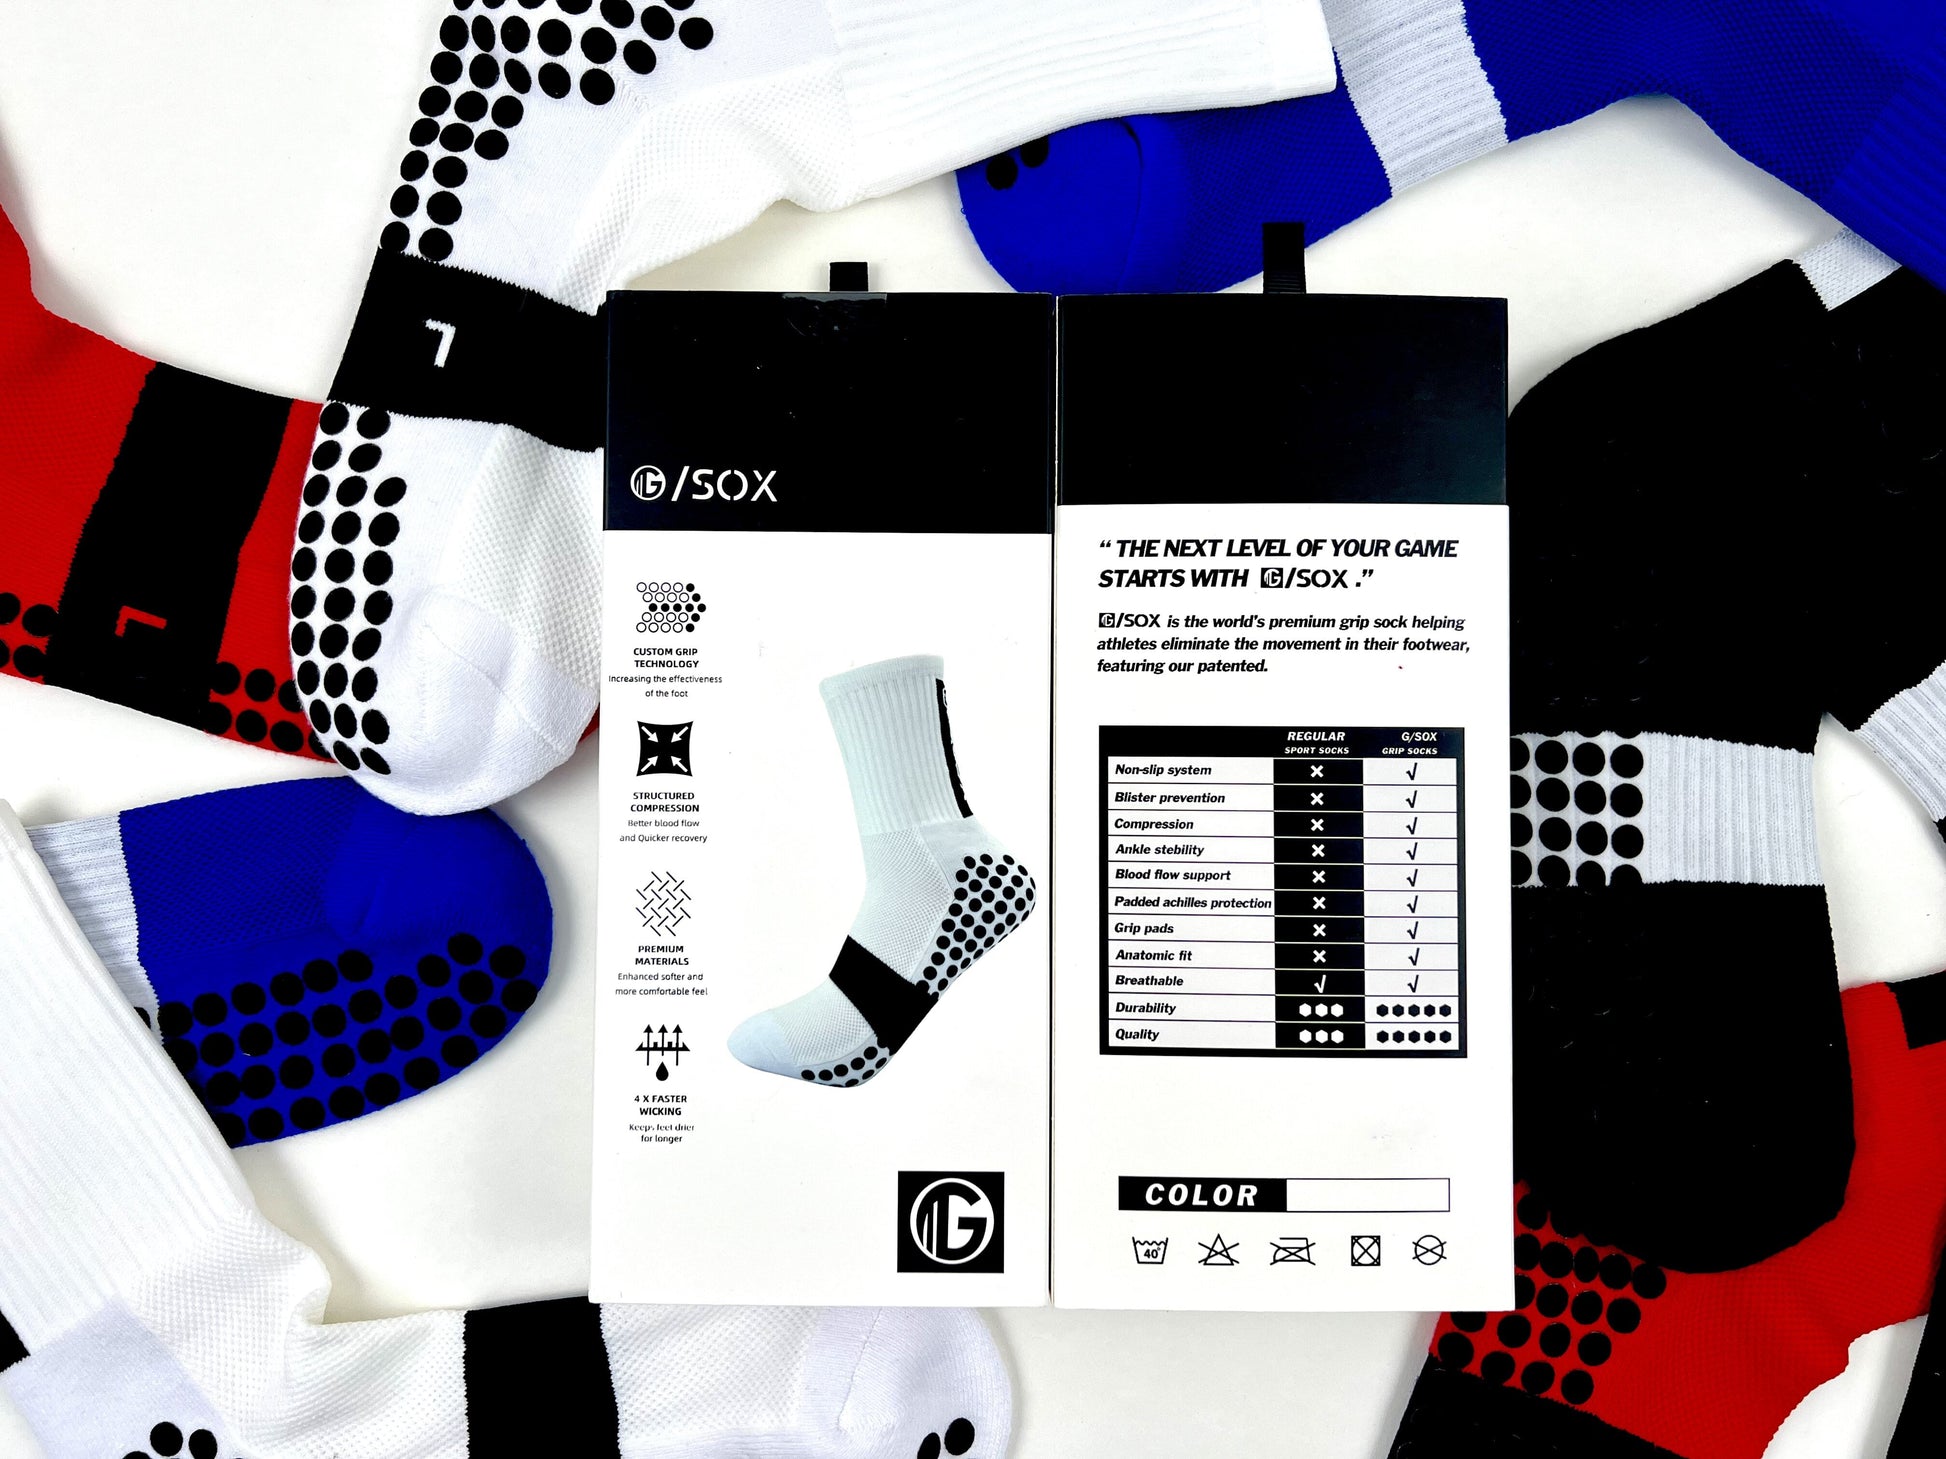 𝔾/𝕊𝕆𝕏 Non-Slip Grip Socks /Red/ – officialgsox